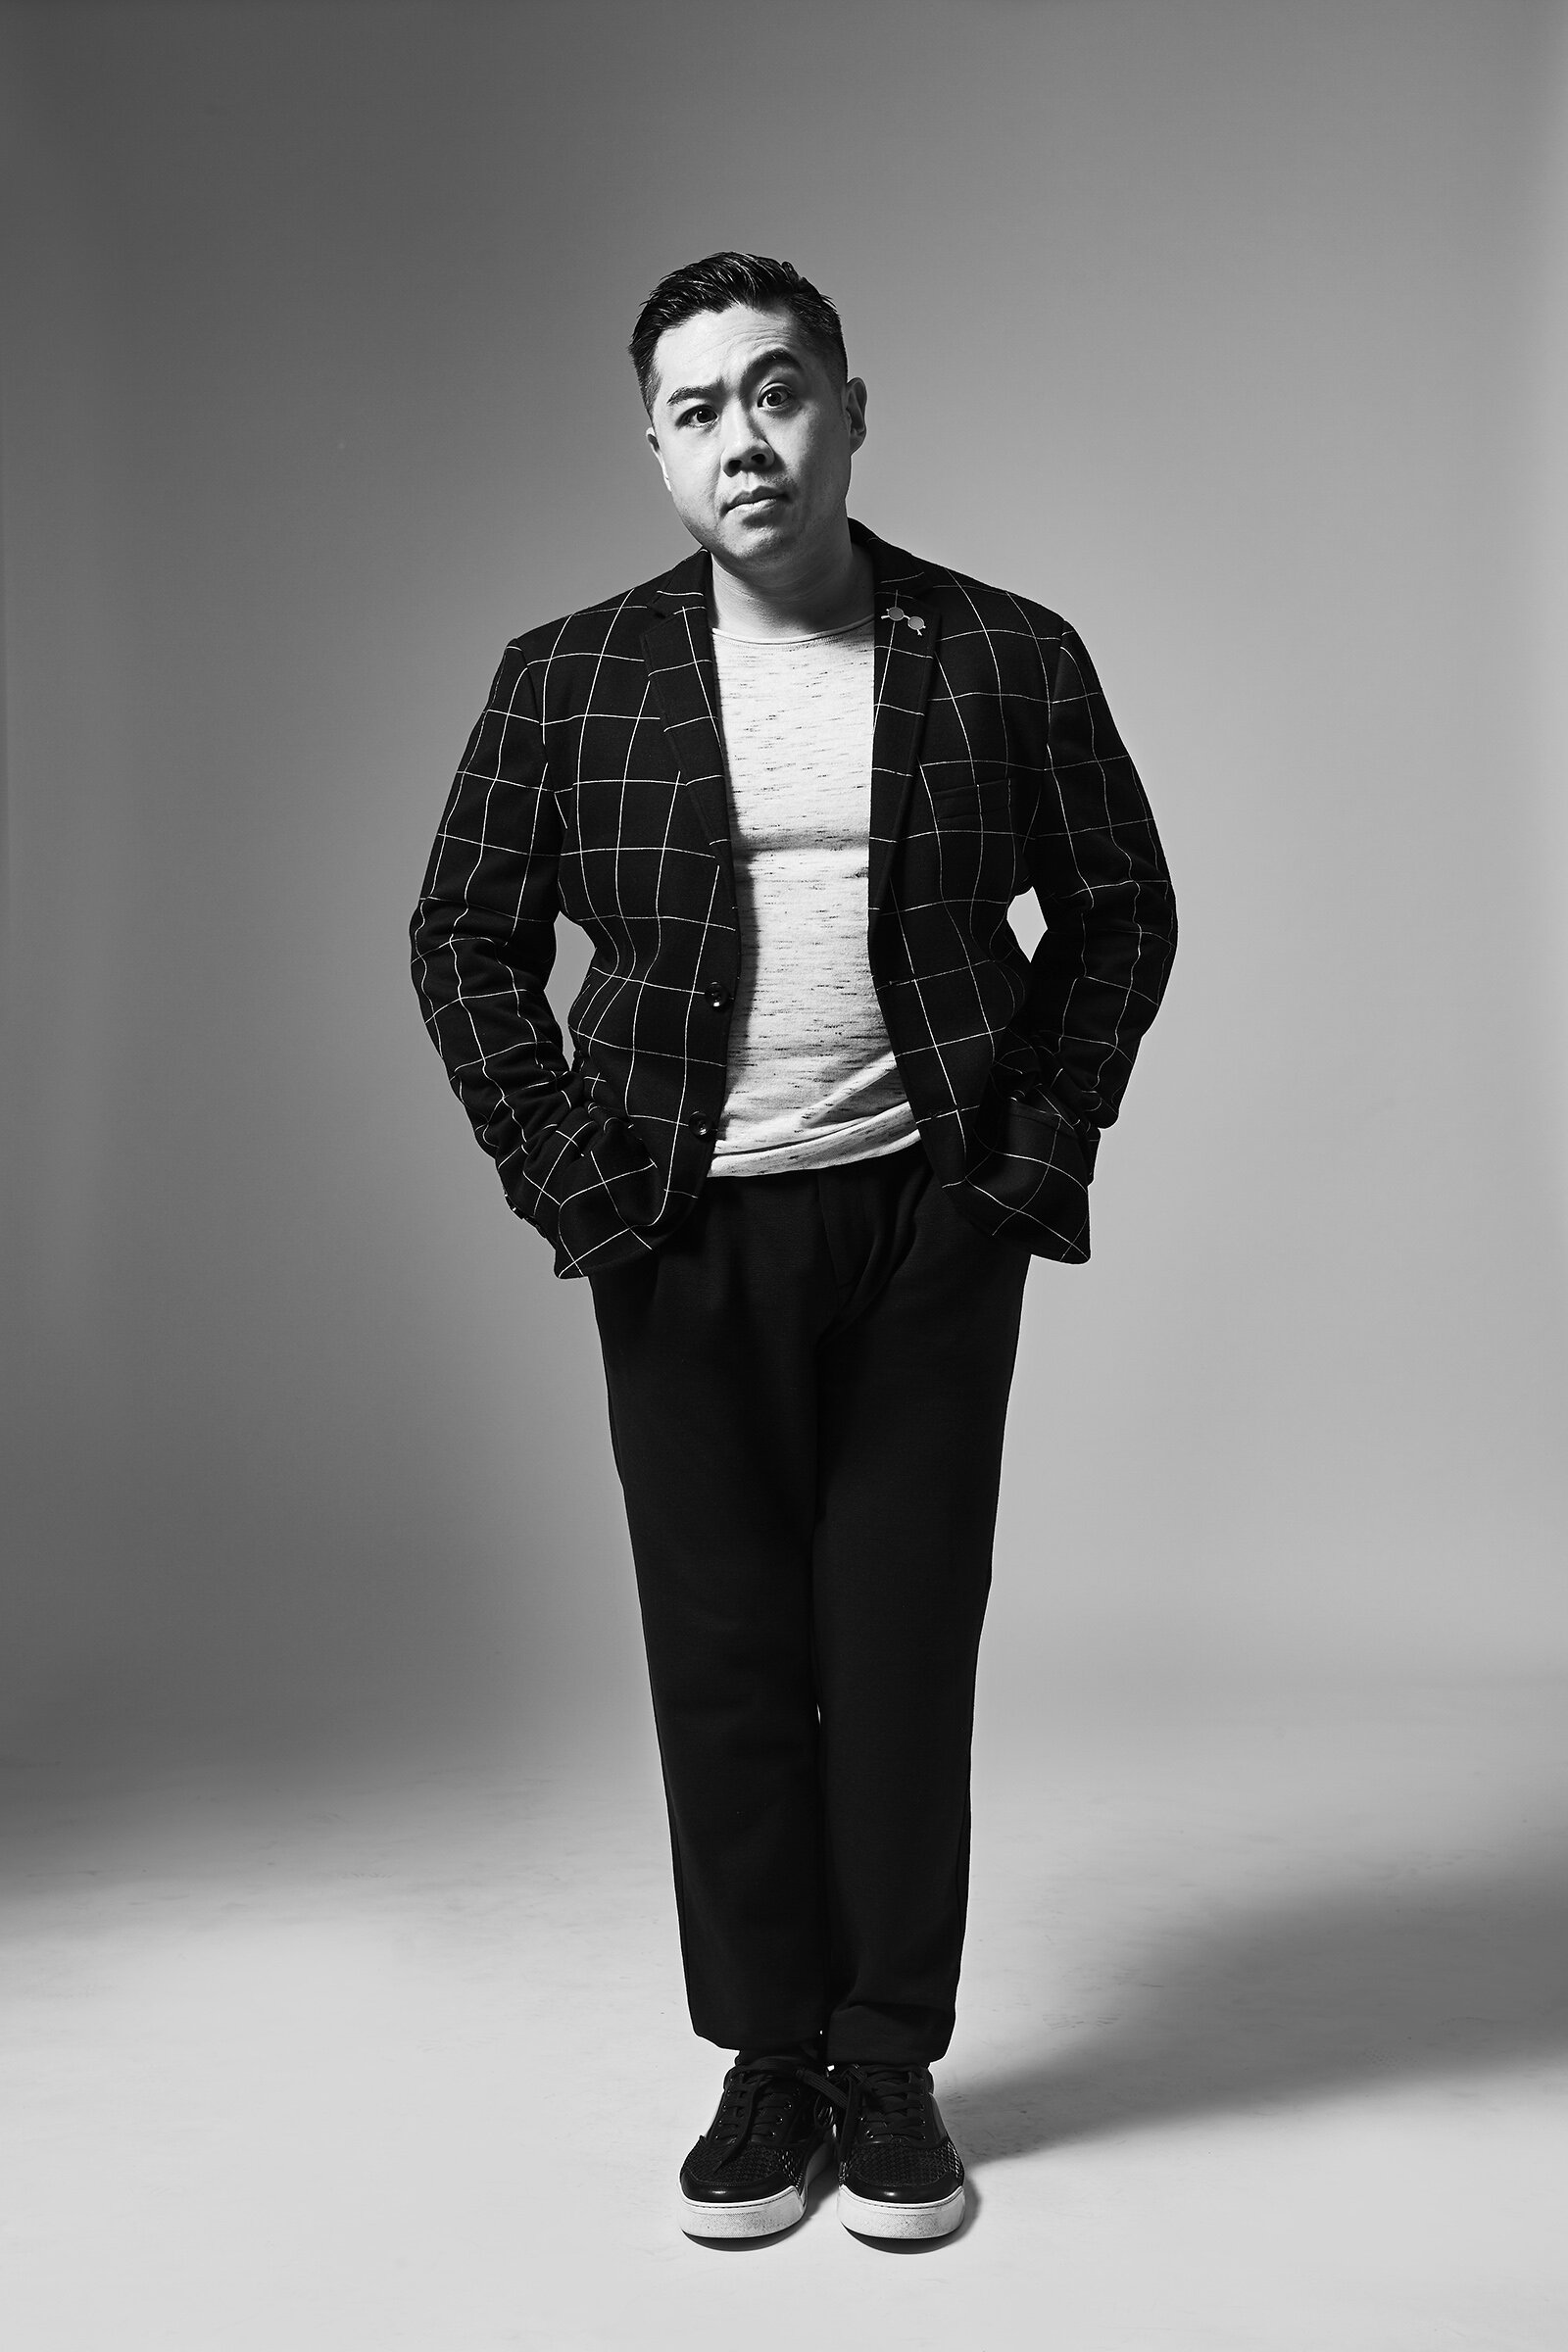 Chef Kelvin Cheung